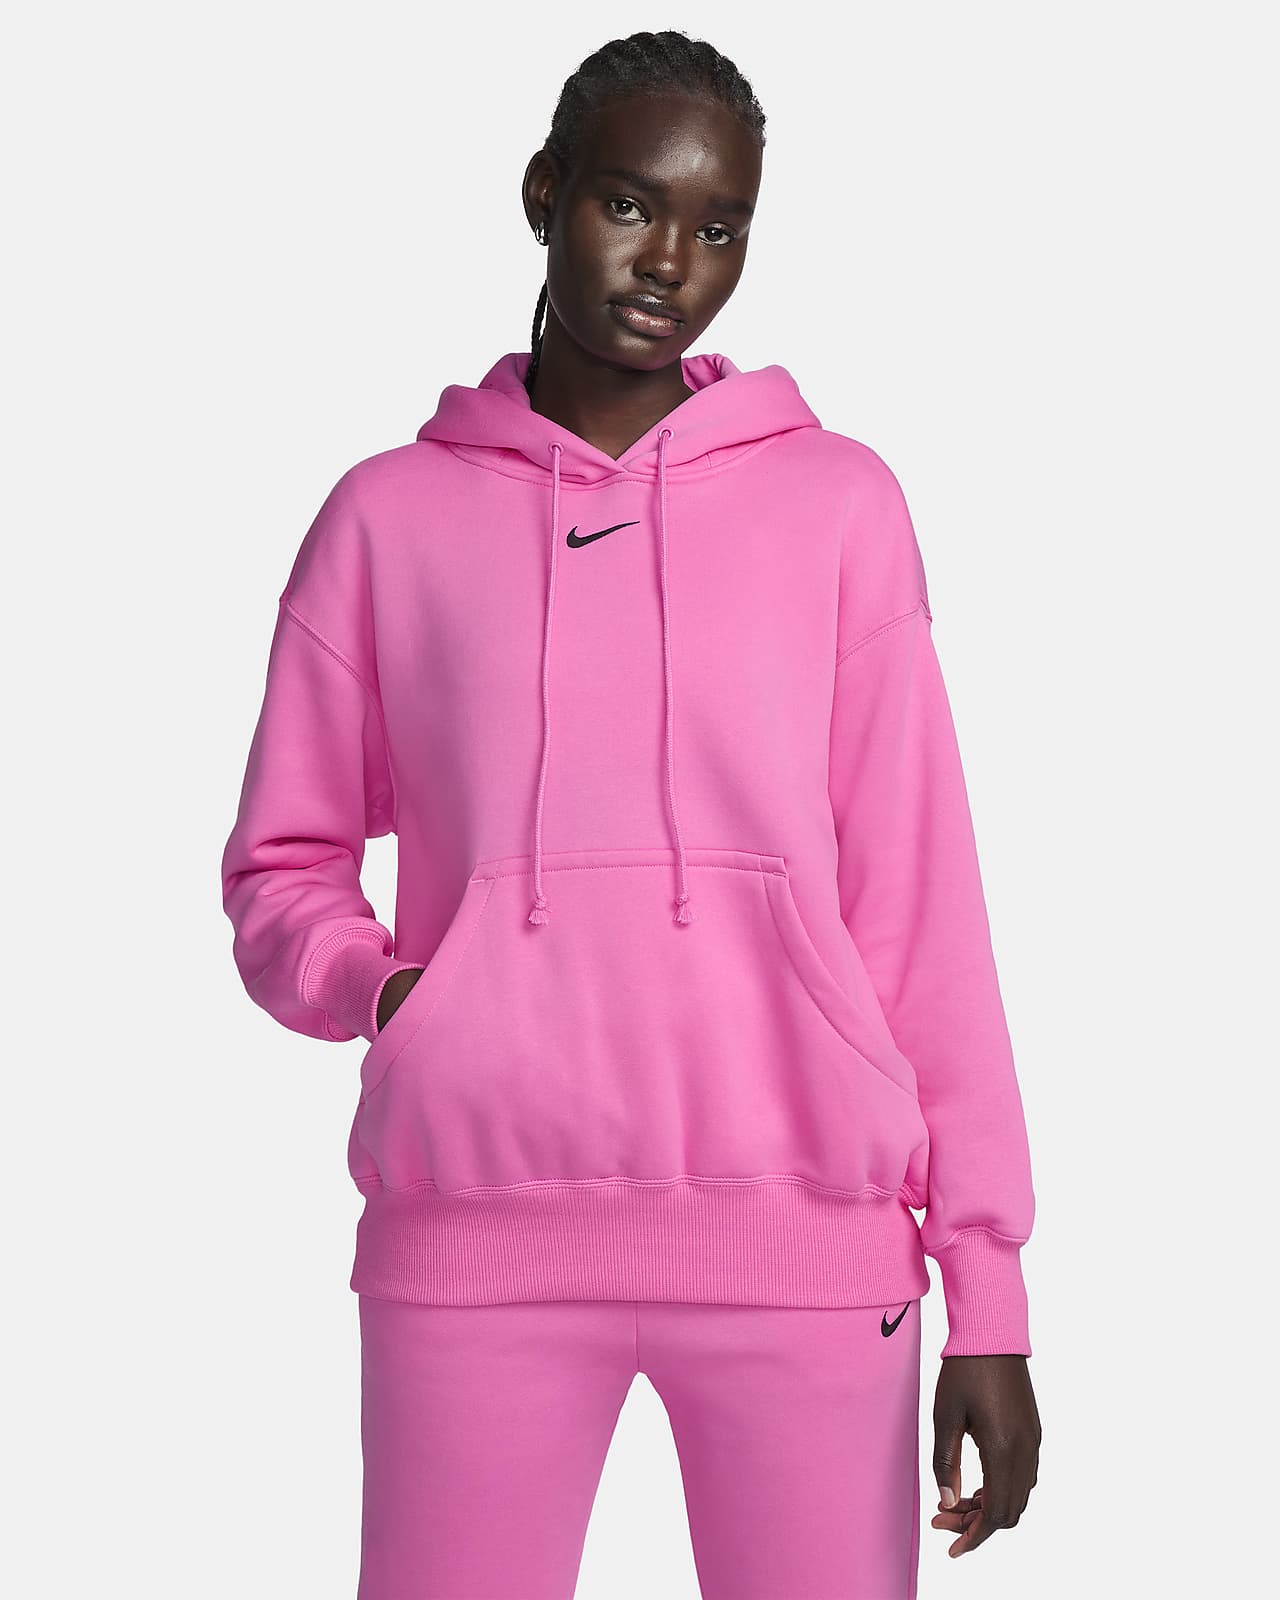 Nike Sportswear Phoenix Fleece, pink and white